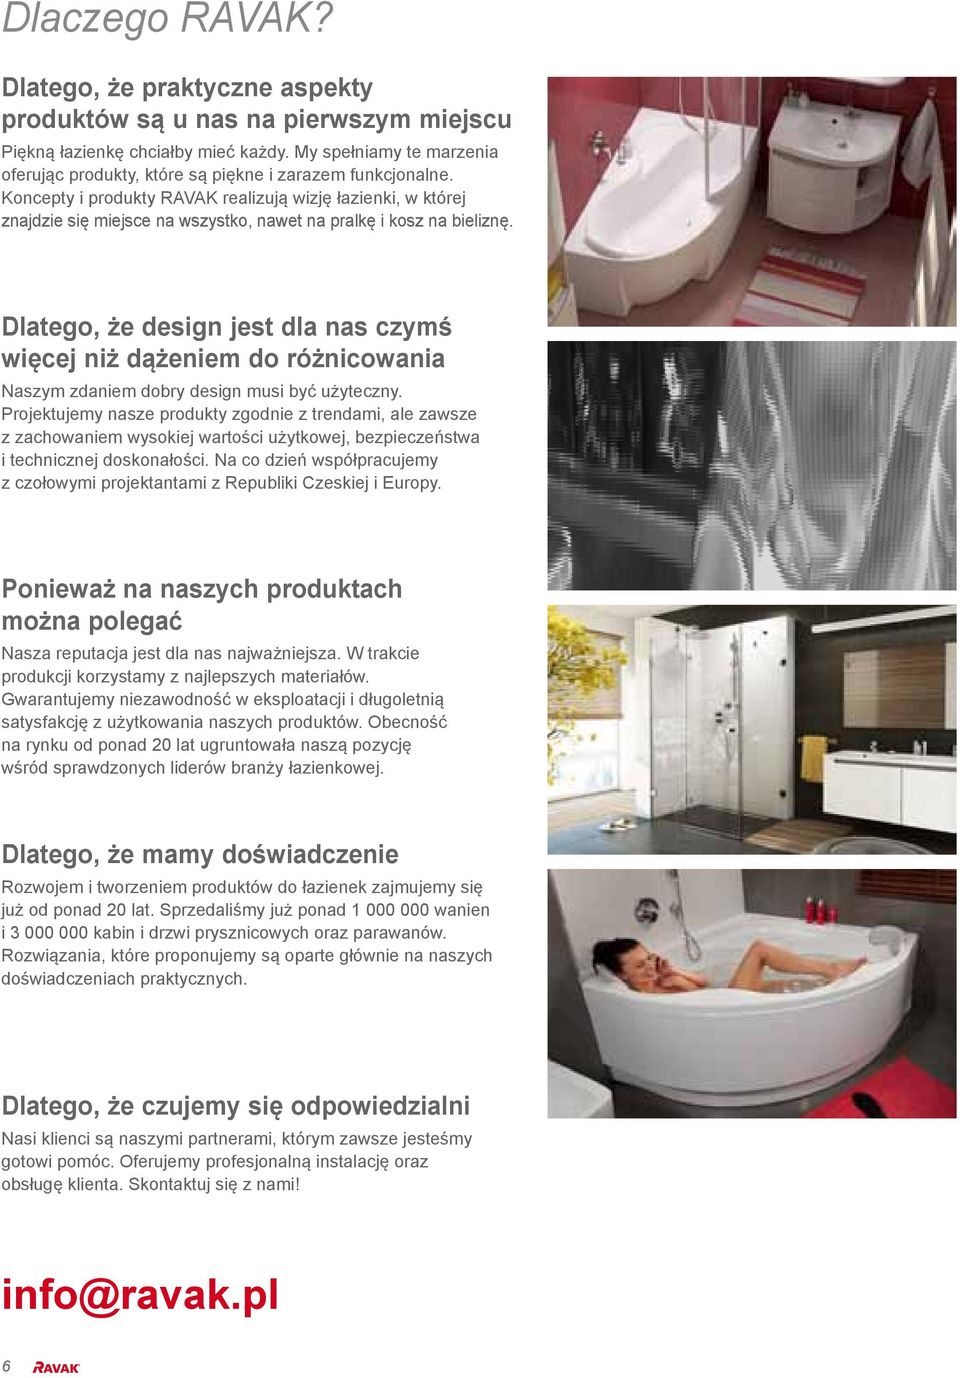 Koncepty i produkty RAVAK realizują wizję łazienki, w której znajdzie się miejsce na wszystko, nawet na pralkę i kosz na bieliznę.